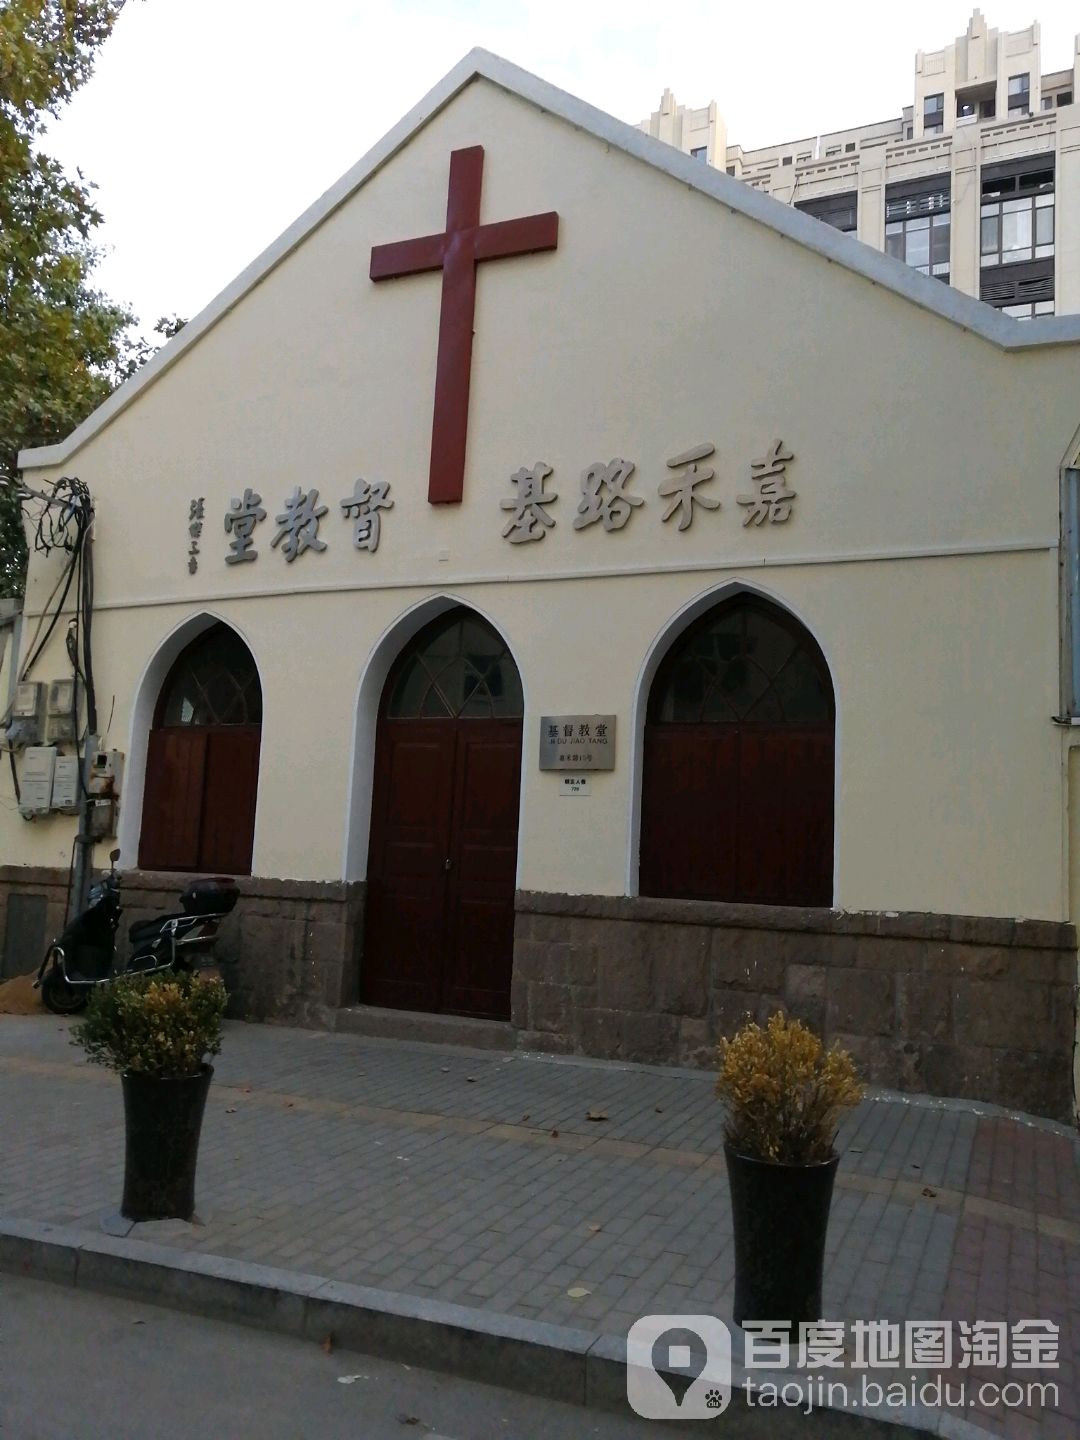 嘉禾路基督教堂(嘉禾路)